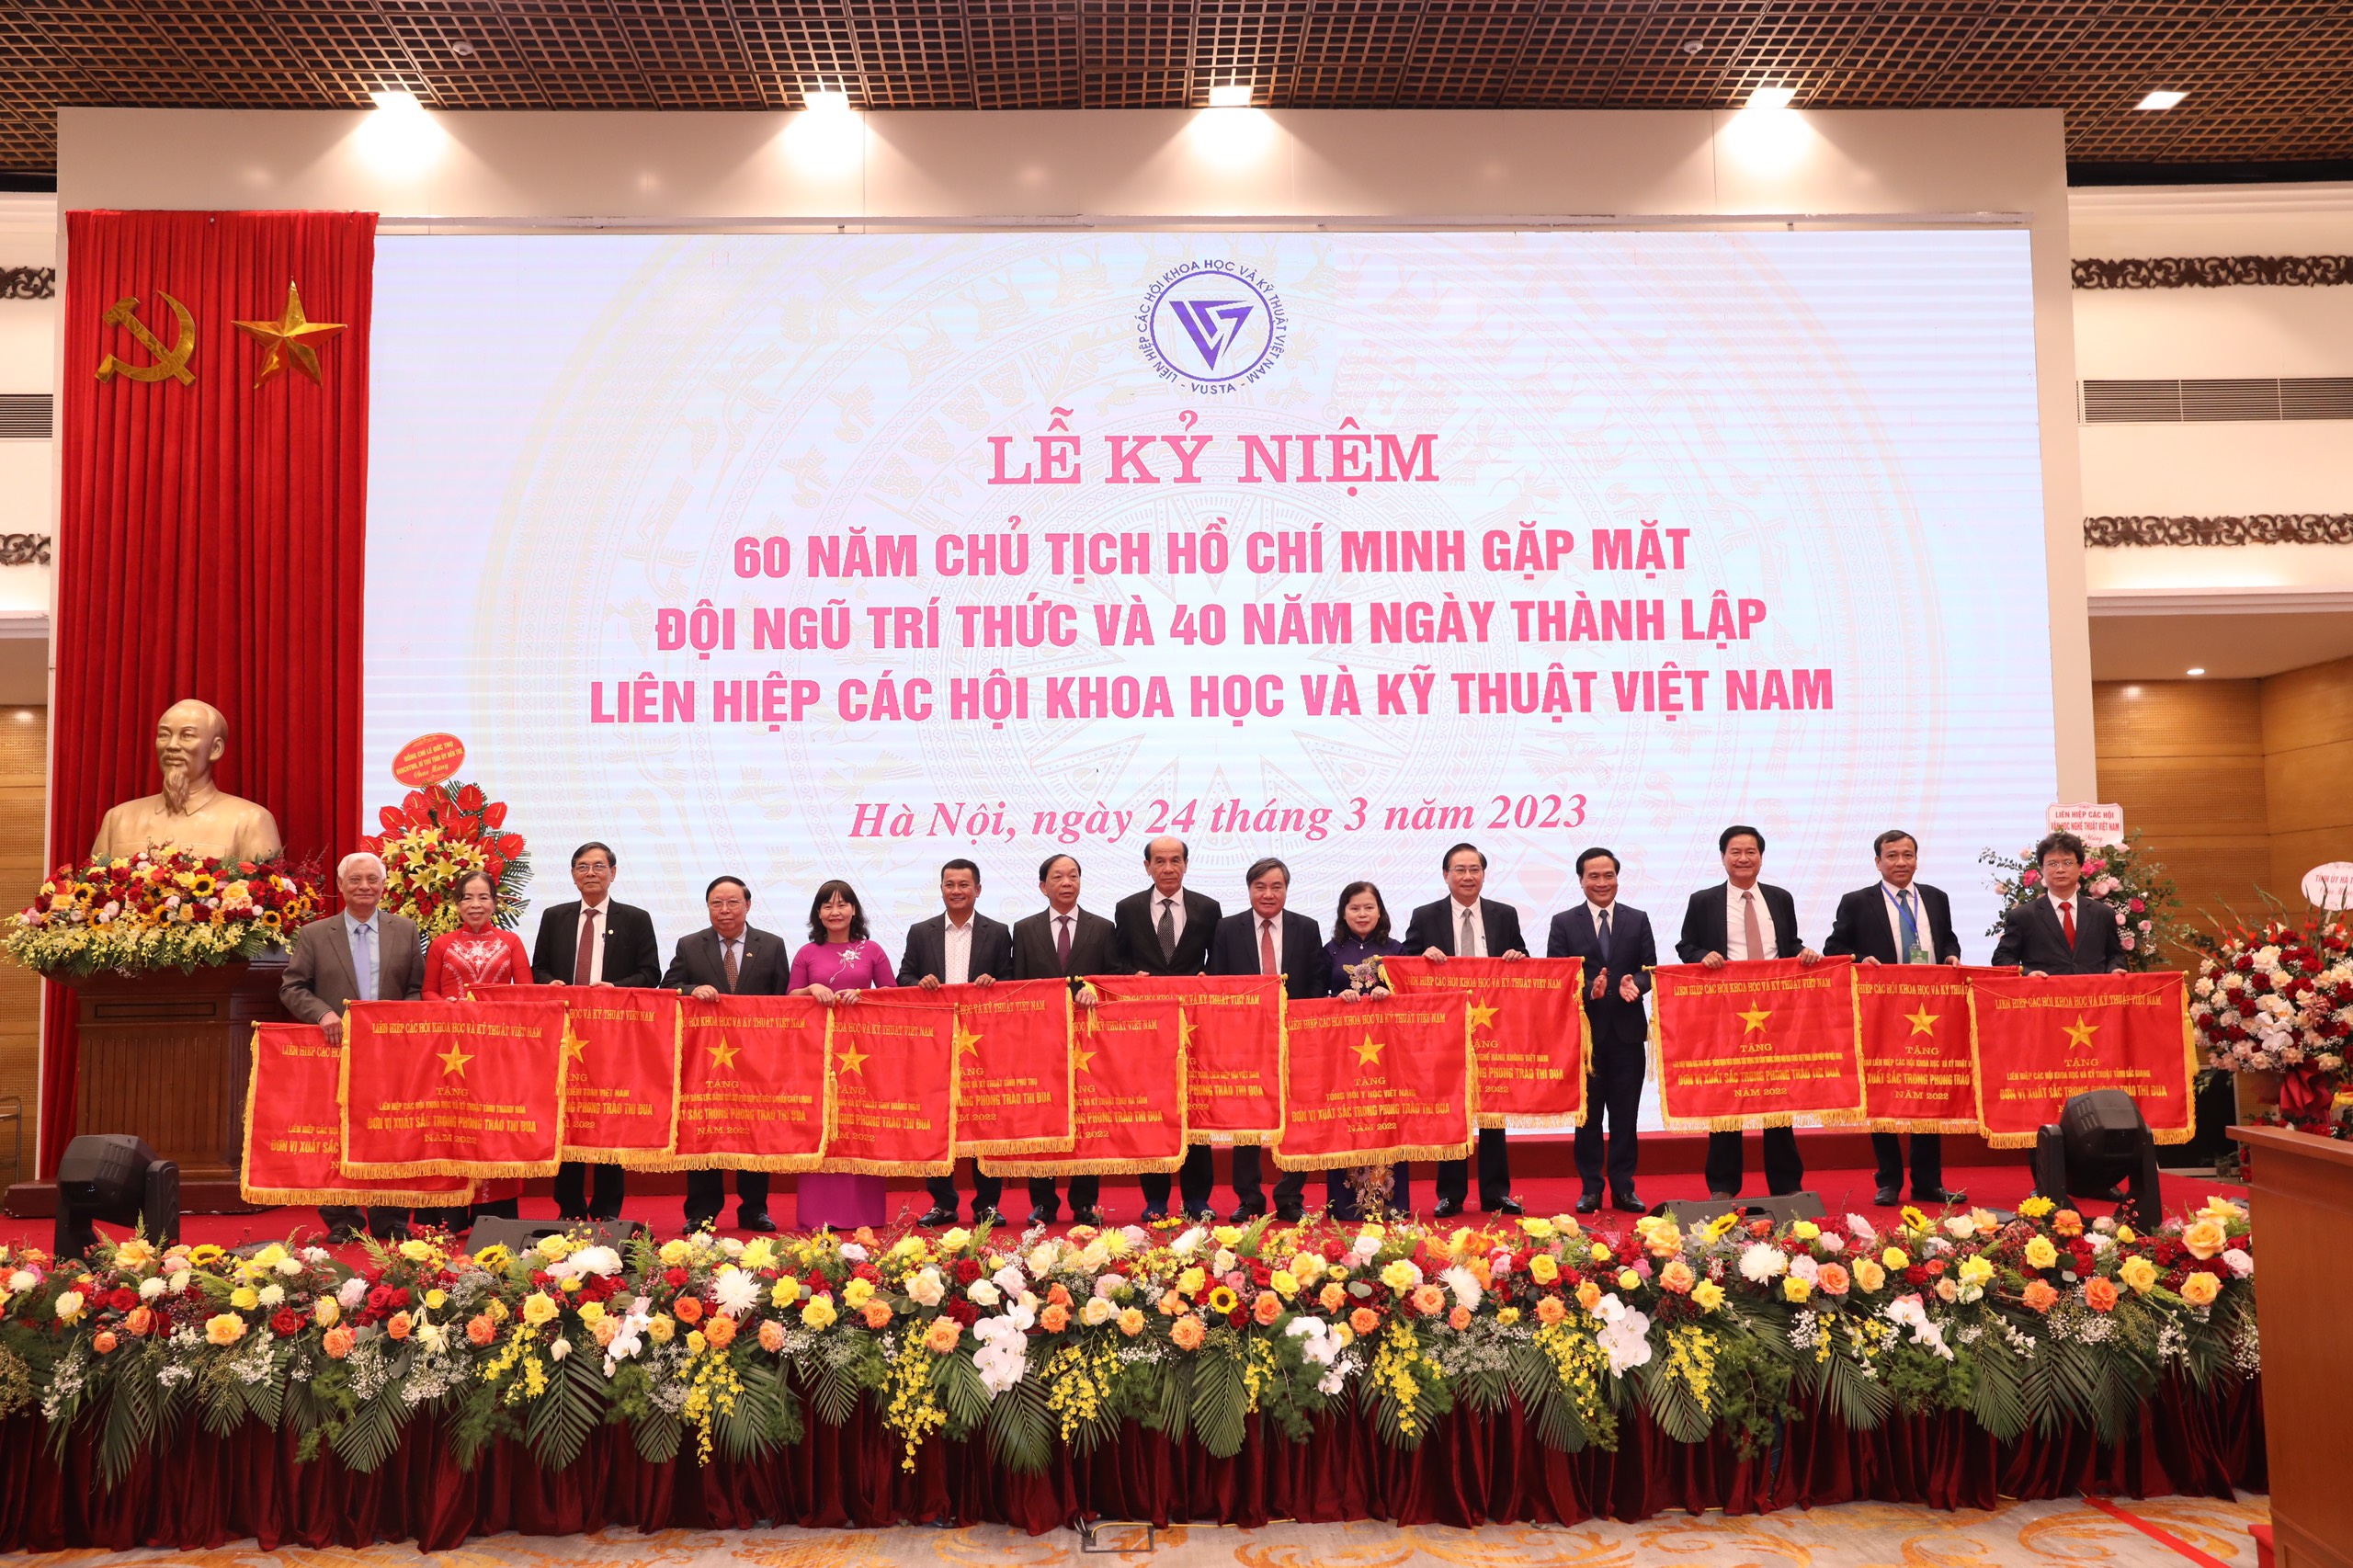 Liên hiệp Hội Hà Tĩnh nhận cờ thi đua xuất sắc năm 2022